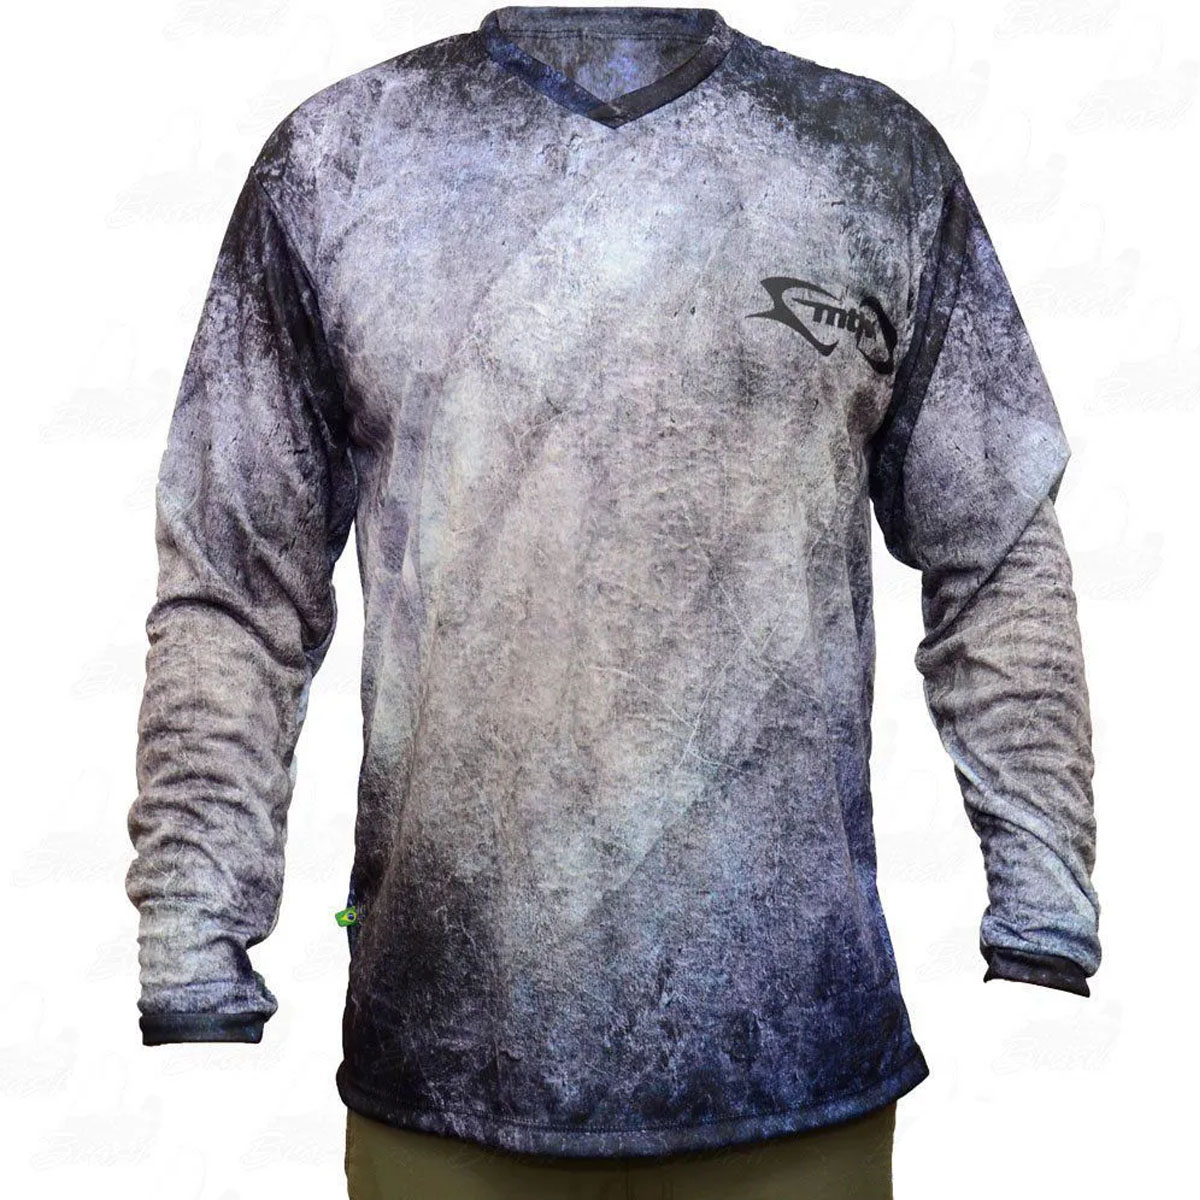 Camiseta de Pesca Mtk Atack com Proteção Solar Filtro UV Cor Pixe